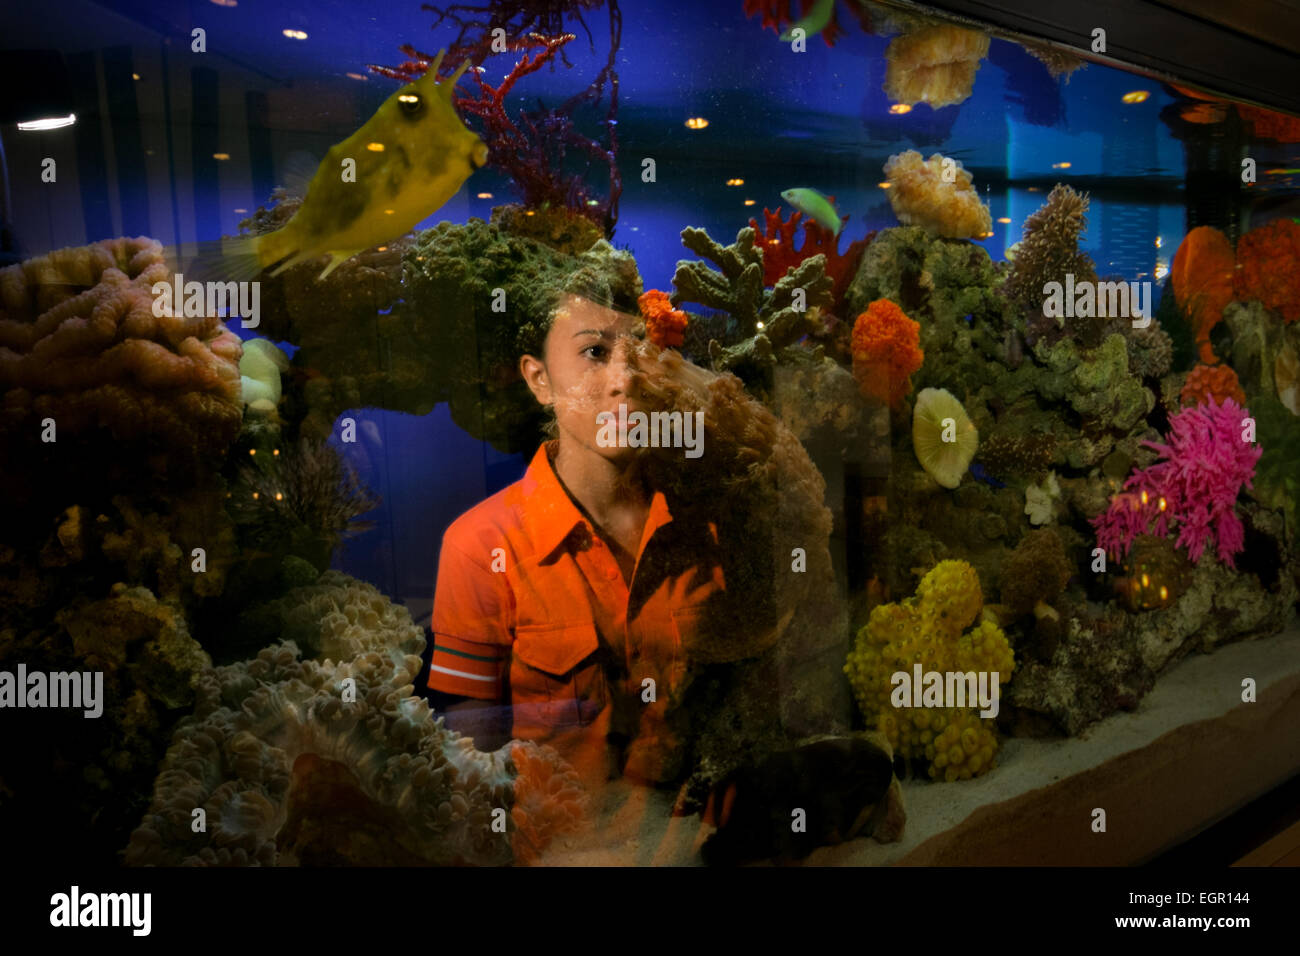 Ein Arbeiter posiert für ein Foto vor einem Salzwasseraquarium voller Korallenriffe und anderer Meeresbiota bei einem Händler in Jakarta, Indonesien. Stockfoto